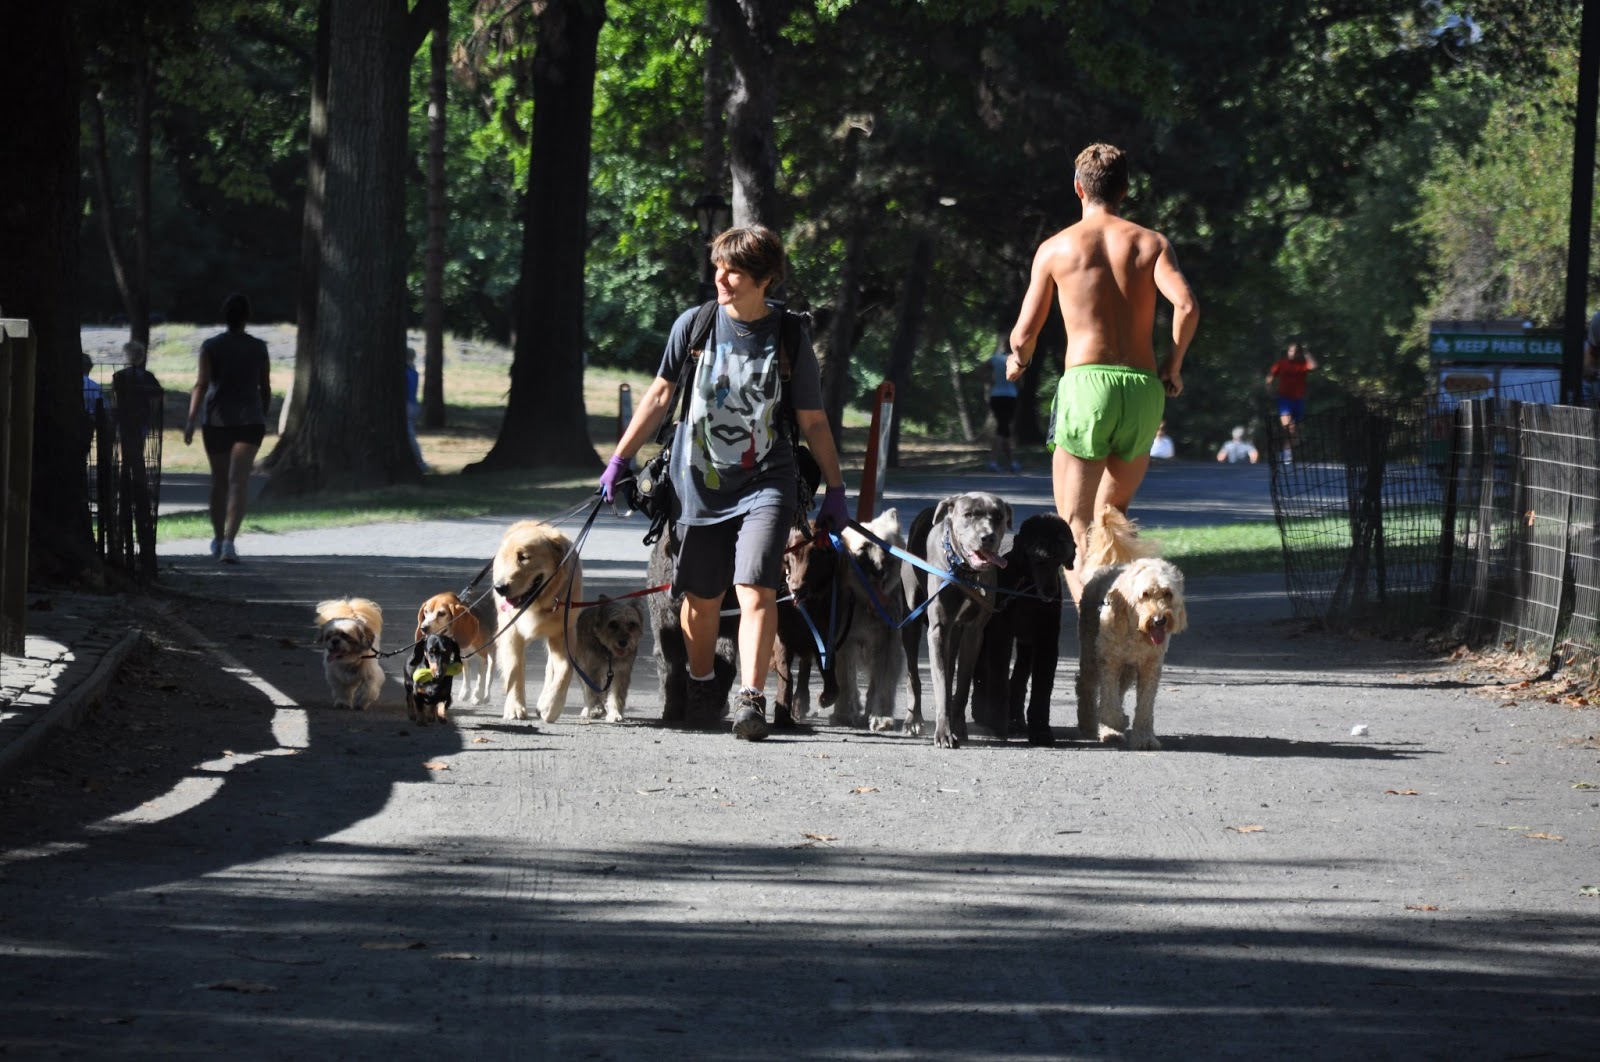 La passeggiata lungolago è piena di gente che fa jogging e nei viali incontriamo anche un dog sitter: è tutto molto "americano". 